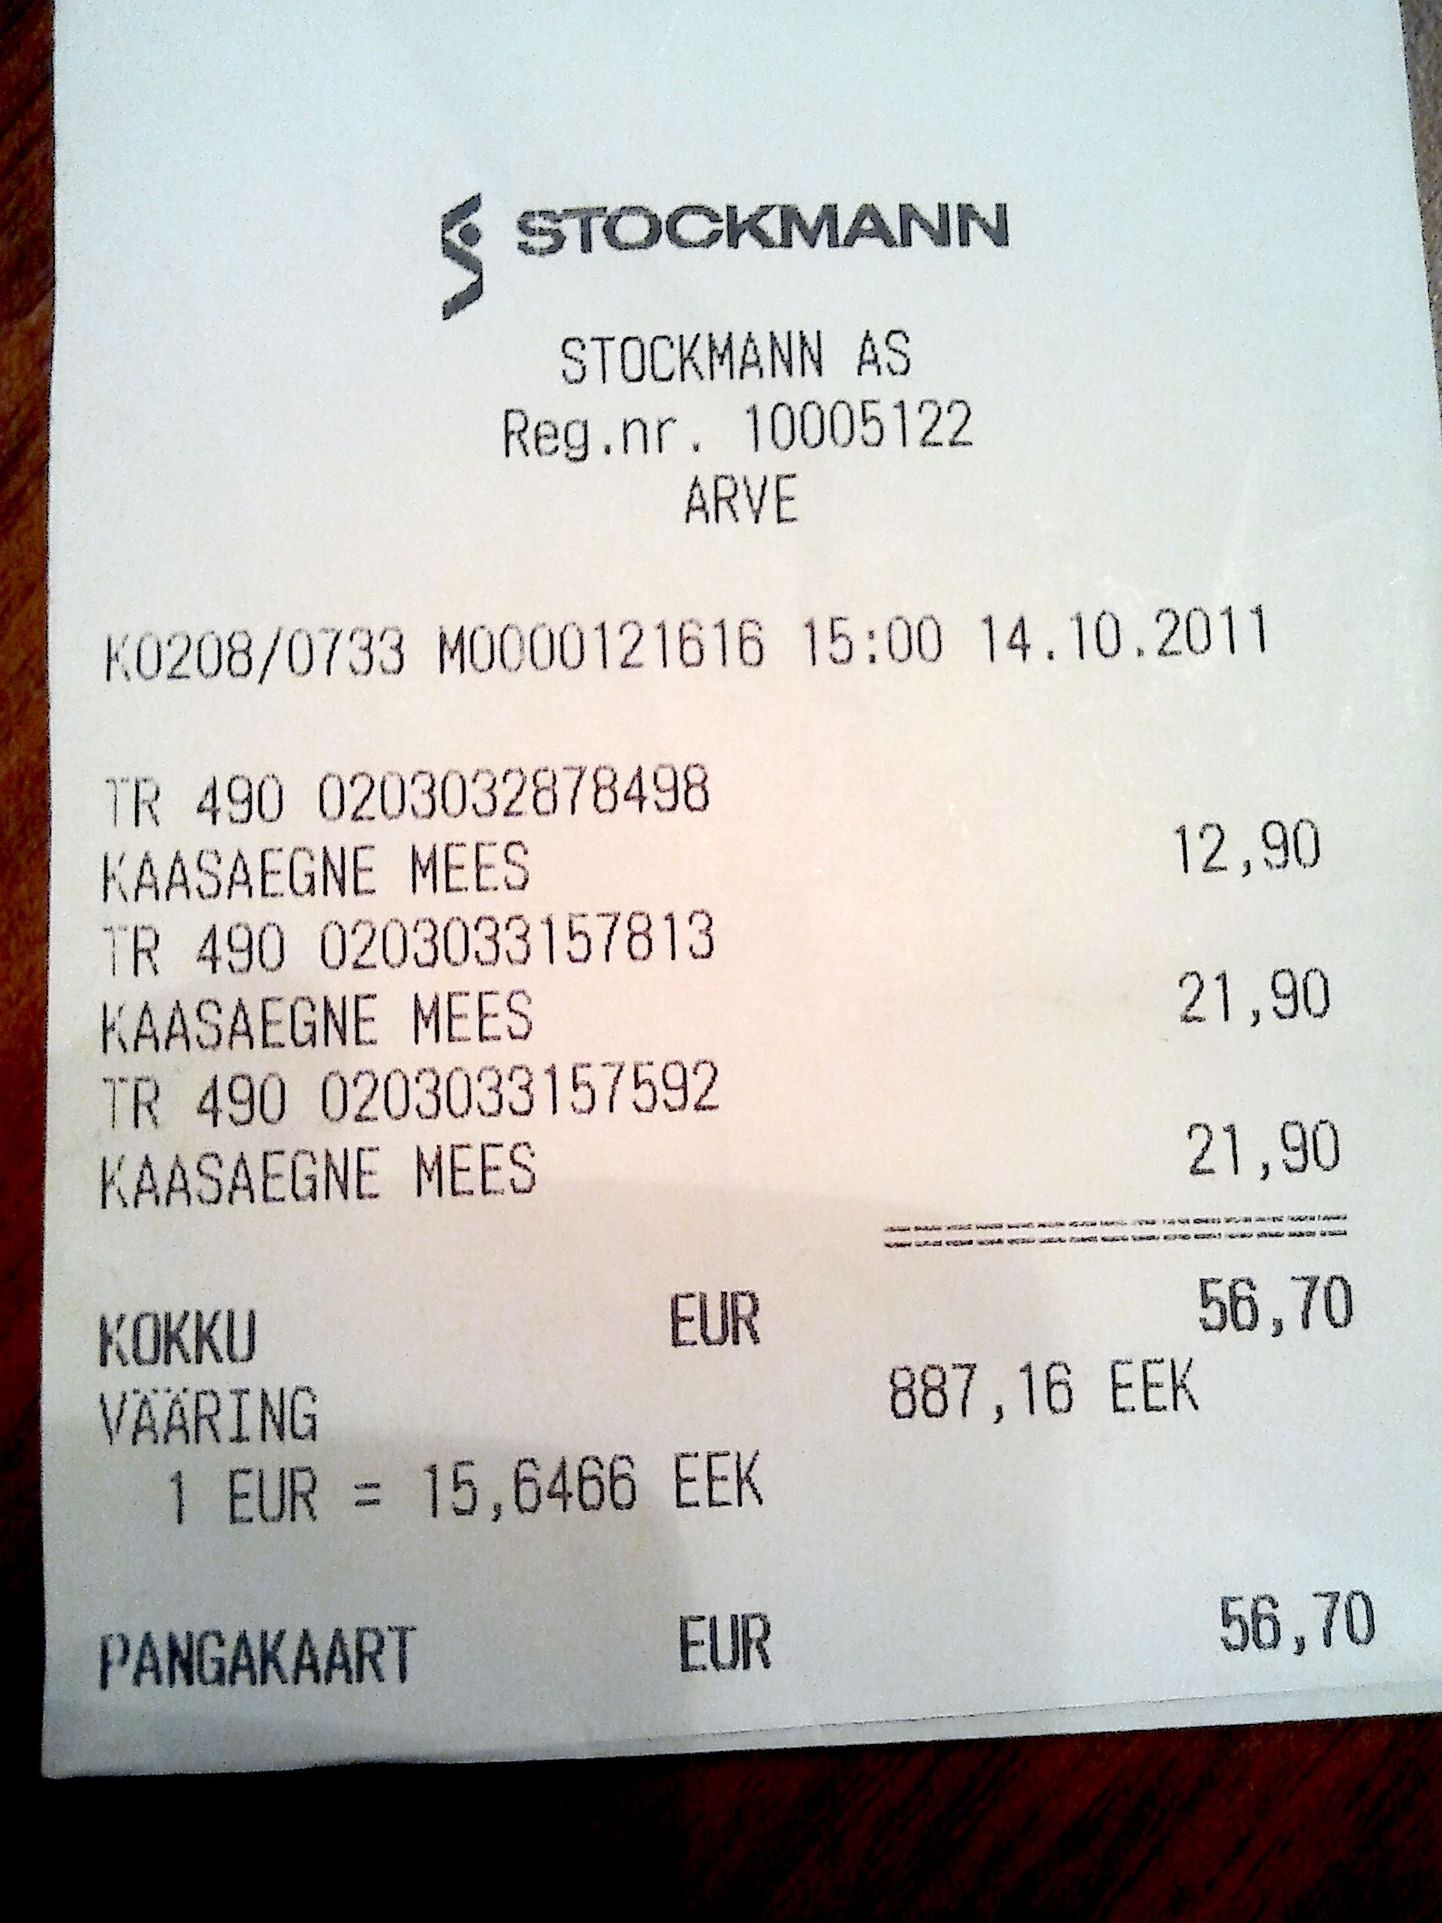 Stockmanni kaubamajast saadut tšeki järgi maksavad kolm kaasaegset meest kokku 56,7 eurot.